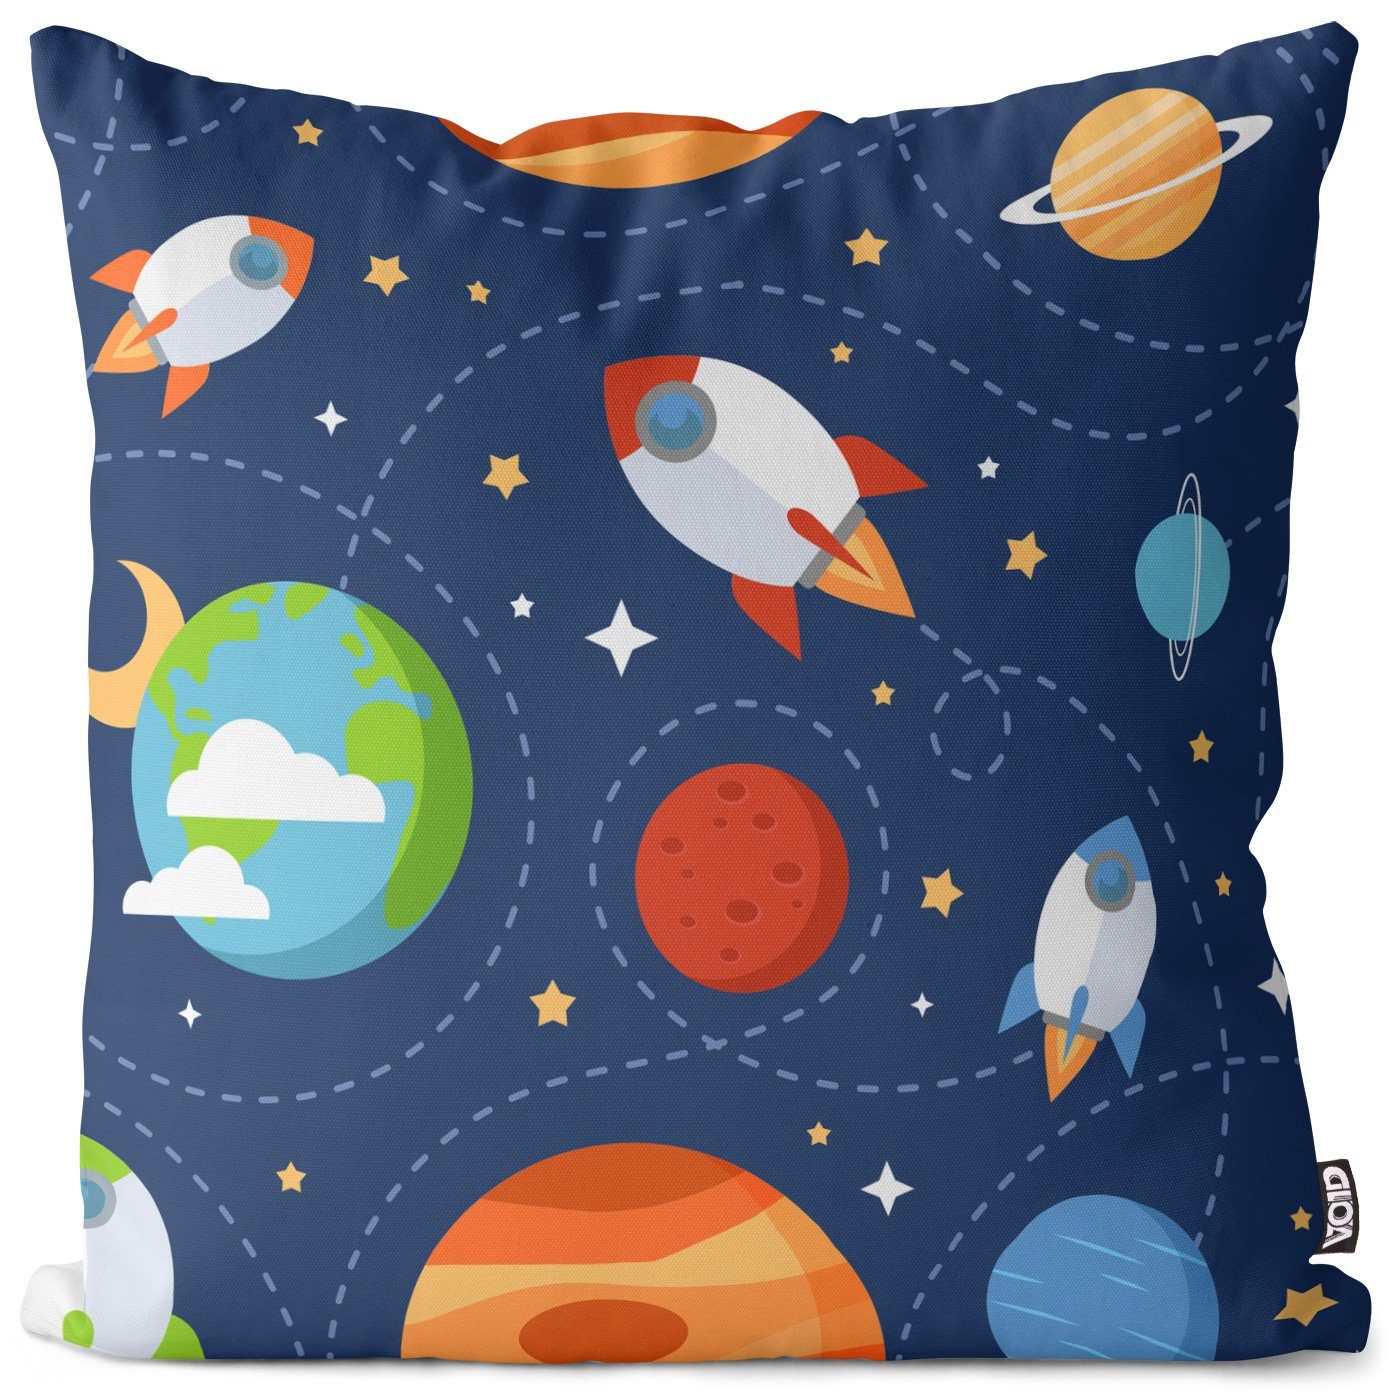 All VOID Jungen Kinder Kissenbezug, Weltraum Himmel (1 Kinderzimmer Astronaut Rakete Space Sterne Stück), Sofa-Kissen Spielzeug Raumfahrt